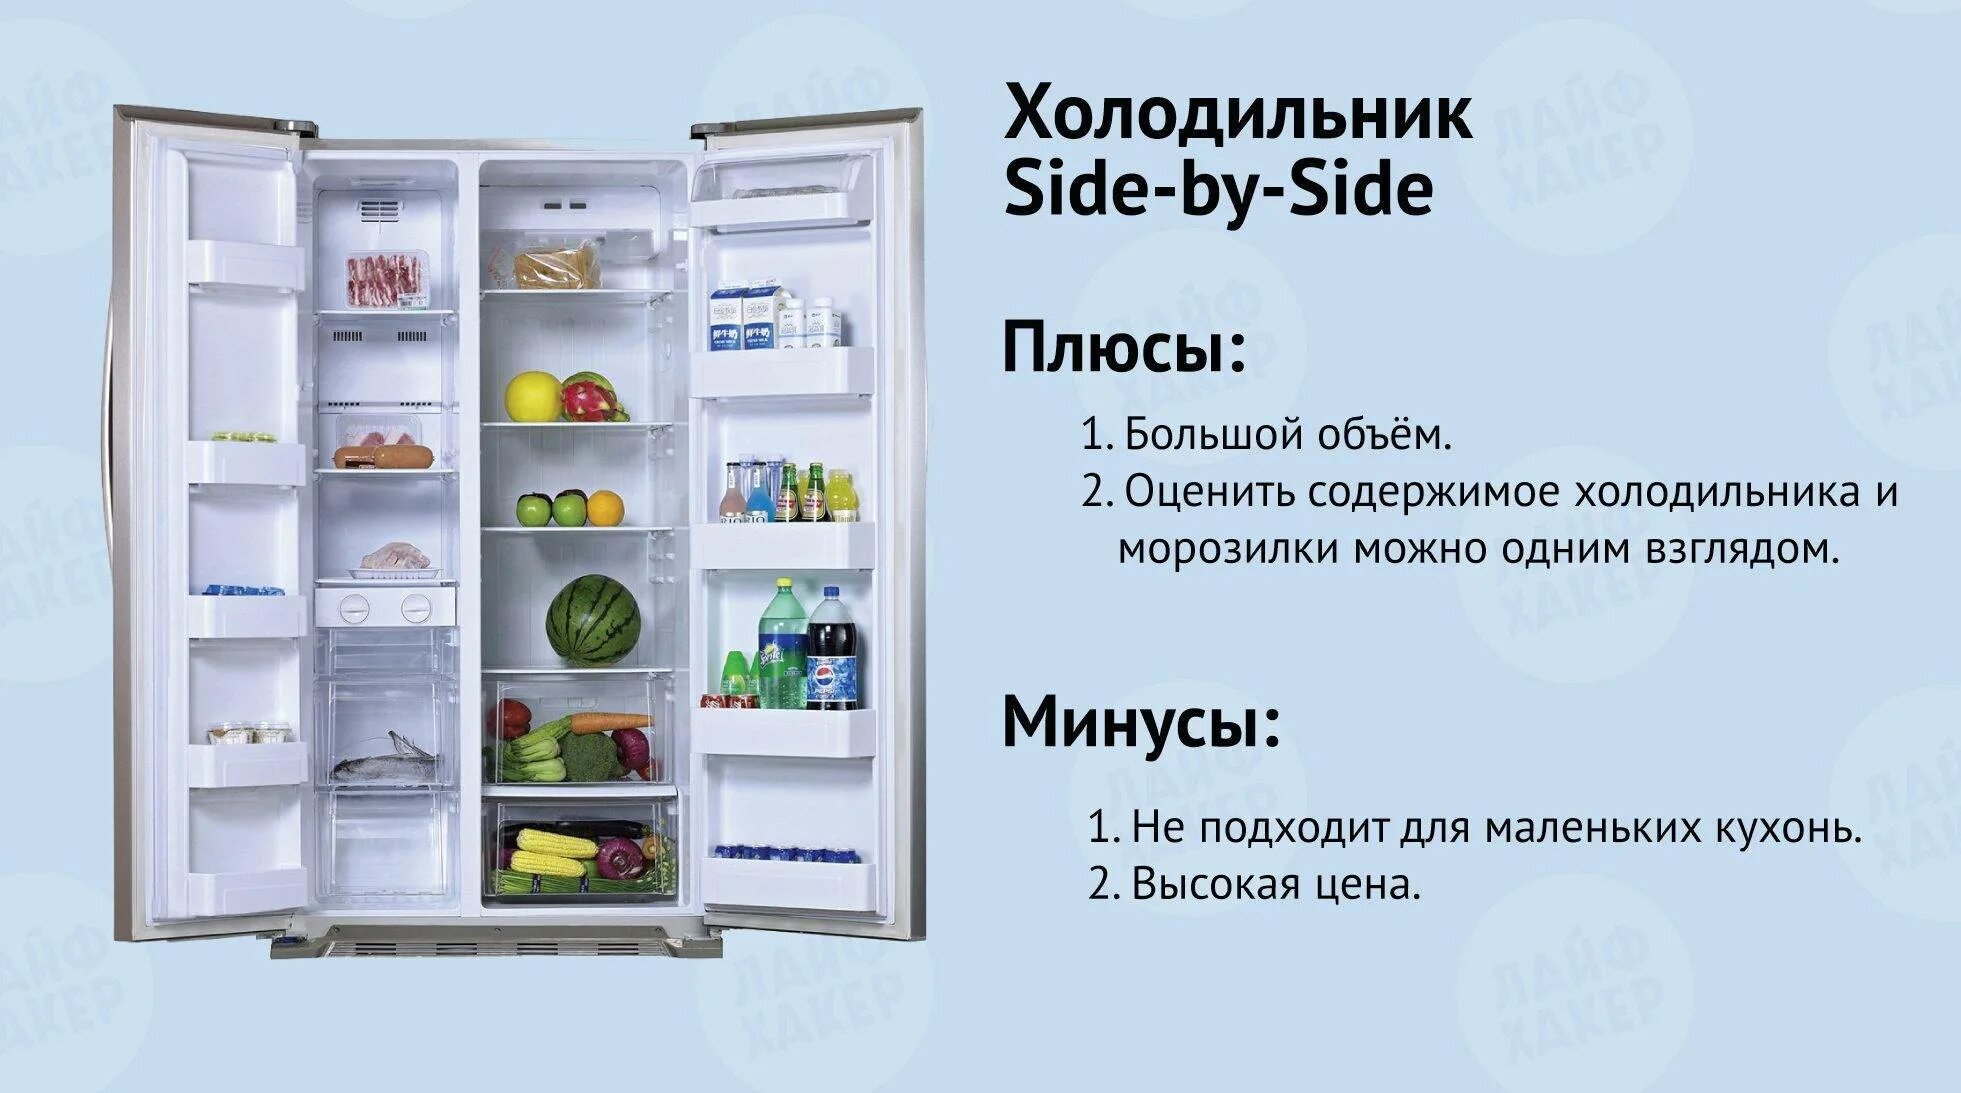 Минусы холодильника. Плюсы и минусы холодильника. Плюсы холодильника. Температура в холодильнике.